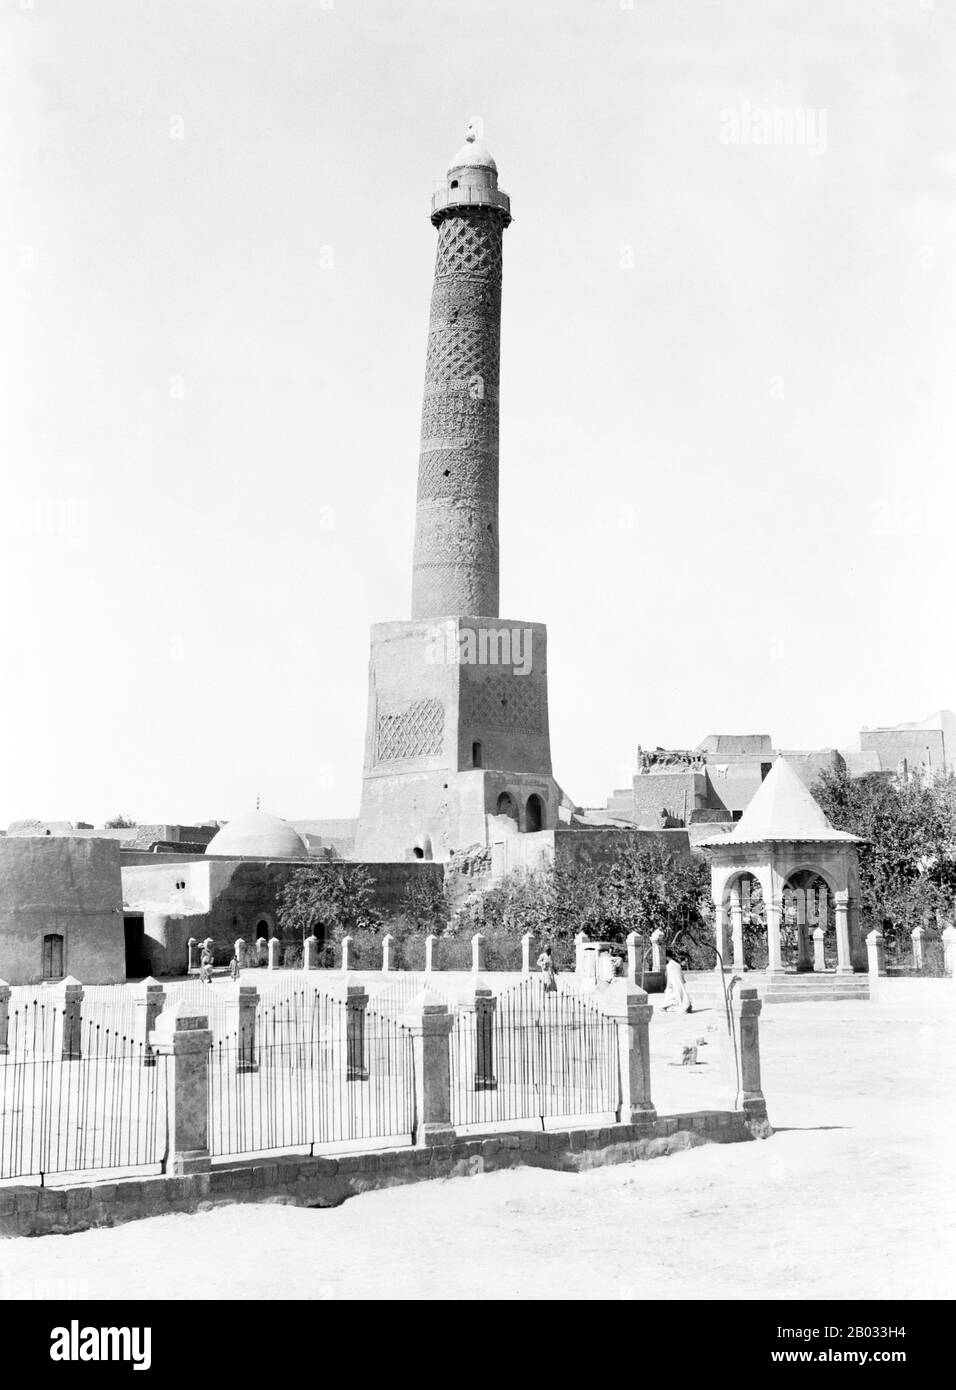 La Grande Moschea di al-Nuri è una moschea storica a Mosul, in Iraq famosa per il suo minareto pendente. La tradizione vuole che Nur ad-Din Zangi costruì la moschea nel 1172-73, poco prima della sua morte. Secondo la cronaca di Ibn al-Athir, dopo che Nur ad-Din prese il controllo di Mosul ordinò al nipote Fakhr al-Din di costruire la moschea. La struttura è stata mirata dai militanti dell'Isis che hanno occupato Mosul il 10 giugno 2014 e in precedenza hanno distrutto la Tomba di Giona. Tuttavia i residenti di Mosul incensed con la distruzione dei loro luoghi culturali protetti la moschea formando una catena umana e formando una res Foto Stock